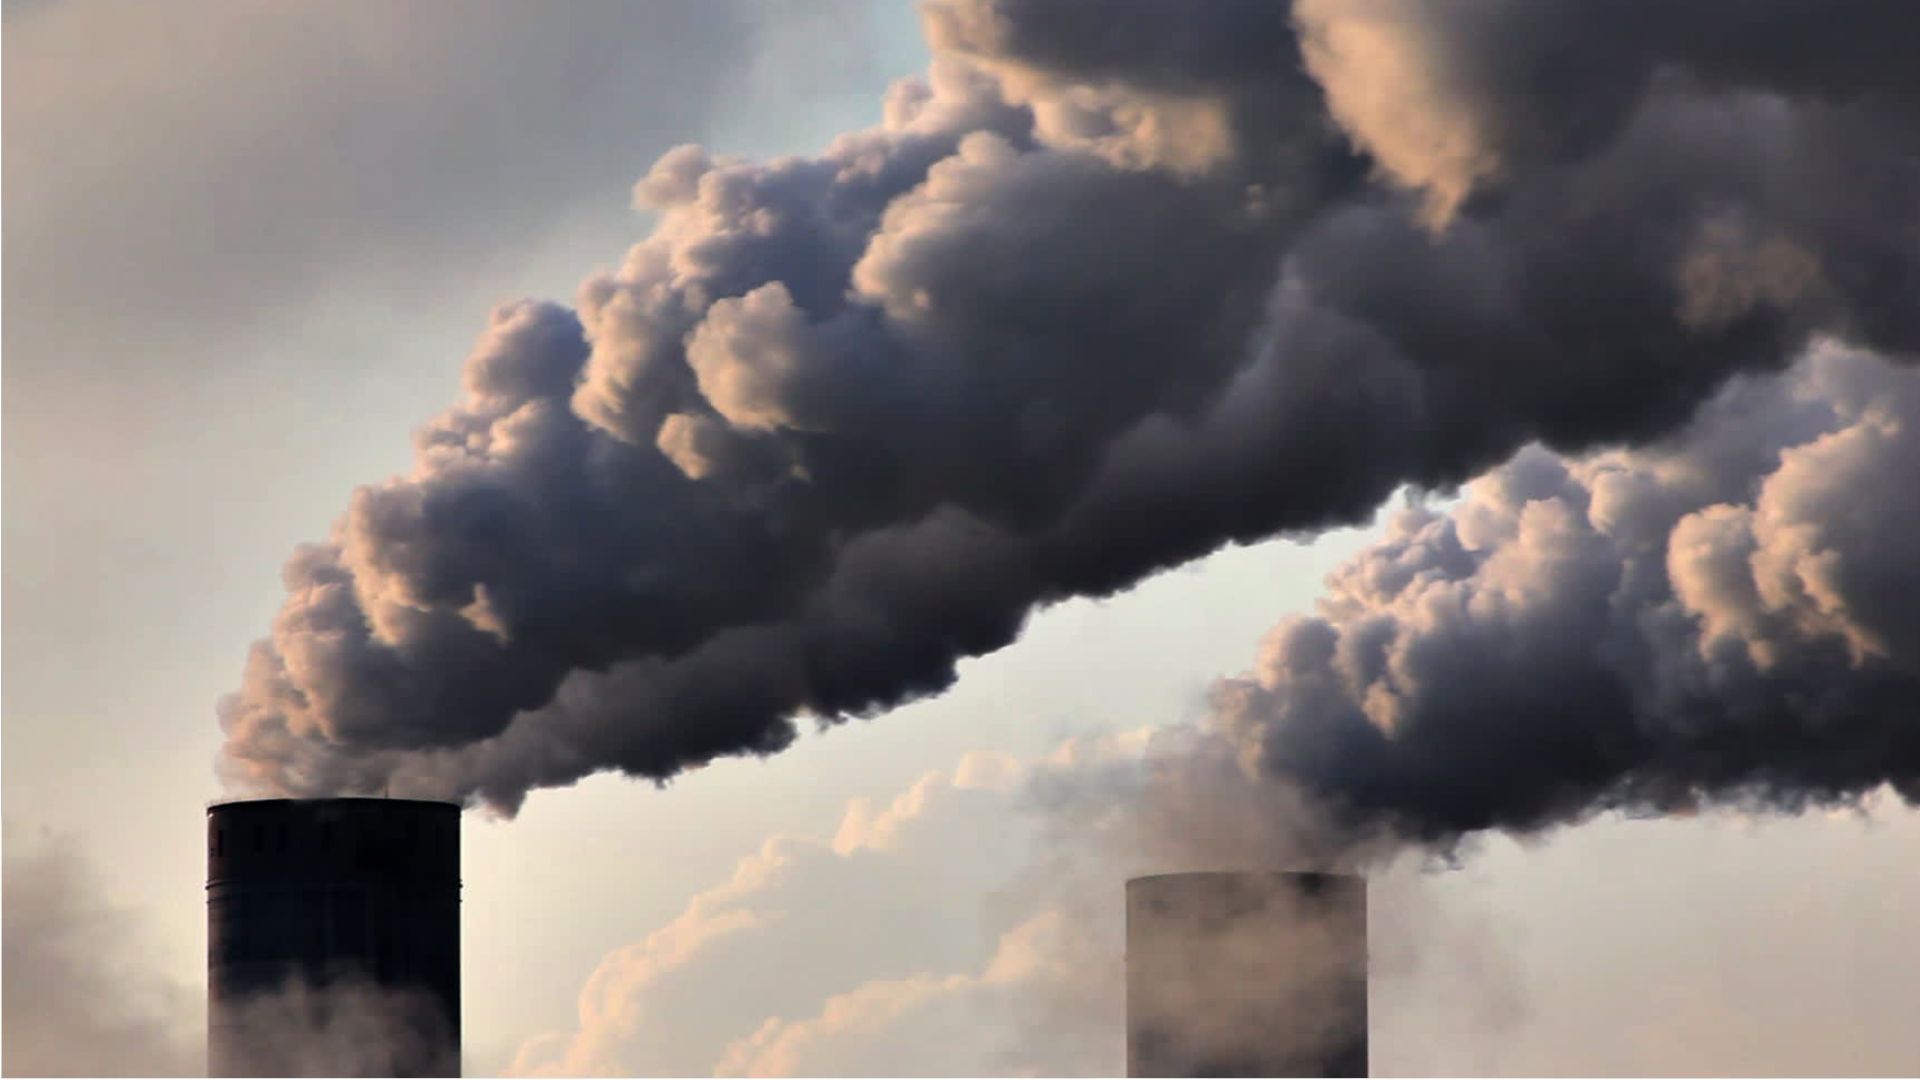 Luftverschmutzung: EU-Parlament beschließt schärfere Standards bis 2030